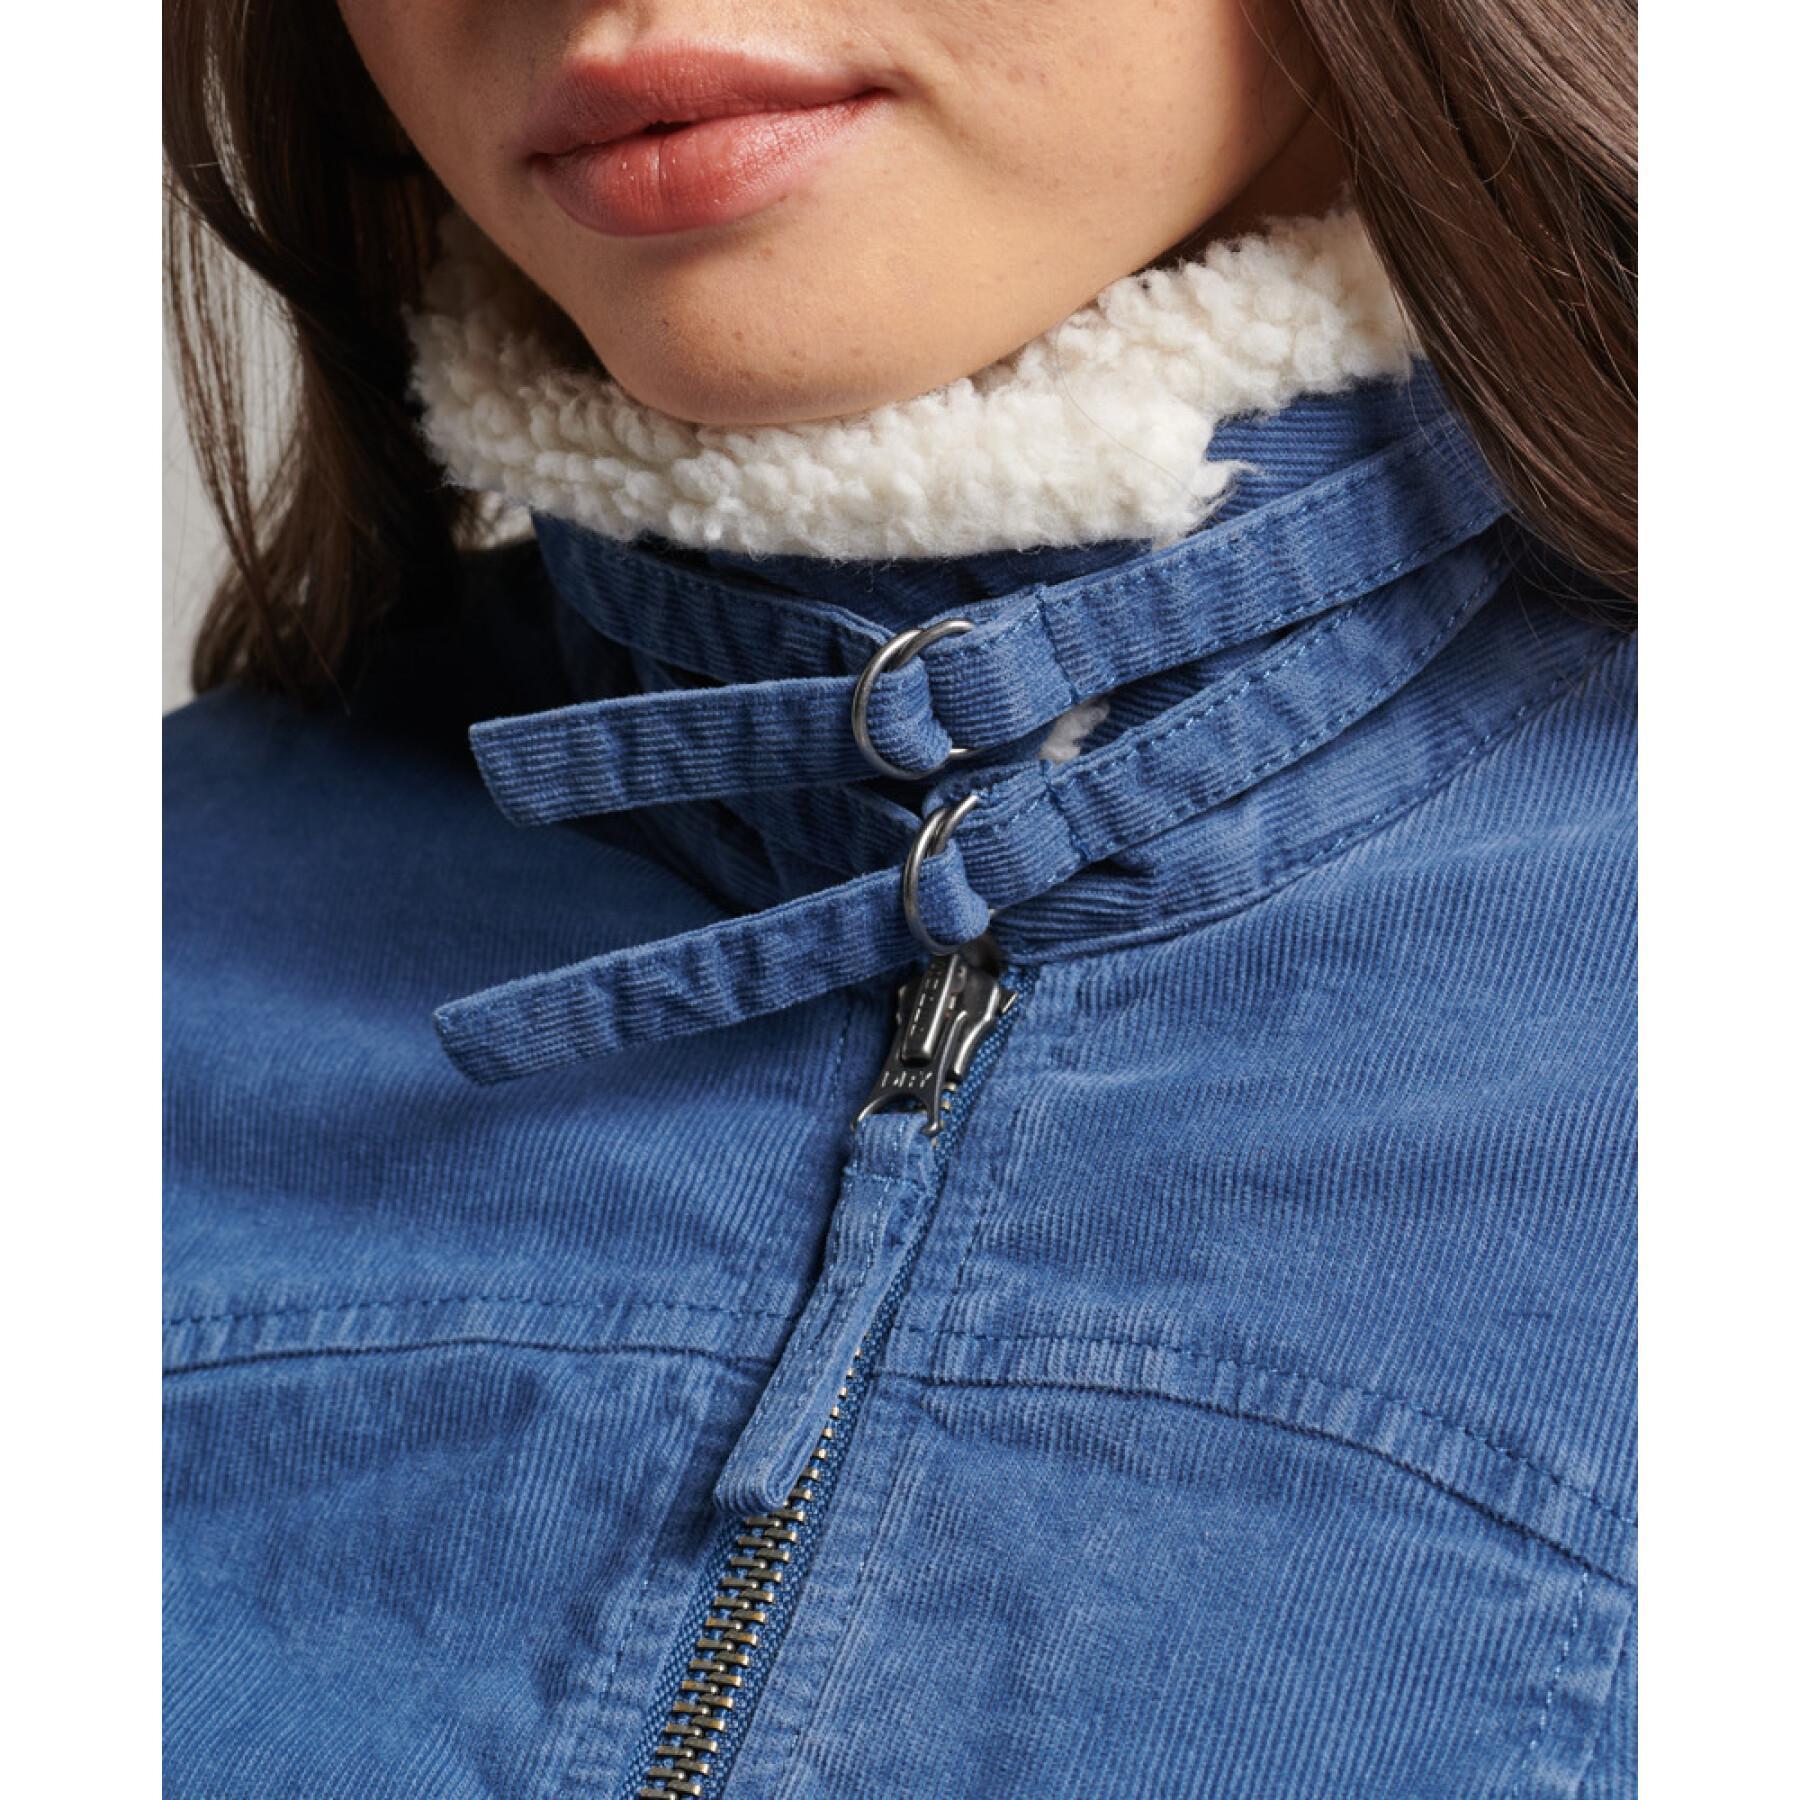 Women's woolly skin lined jacket Superdry Indie